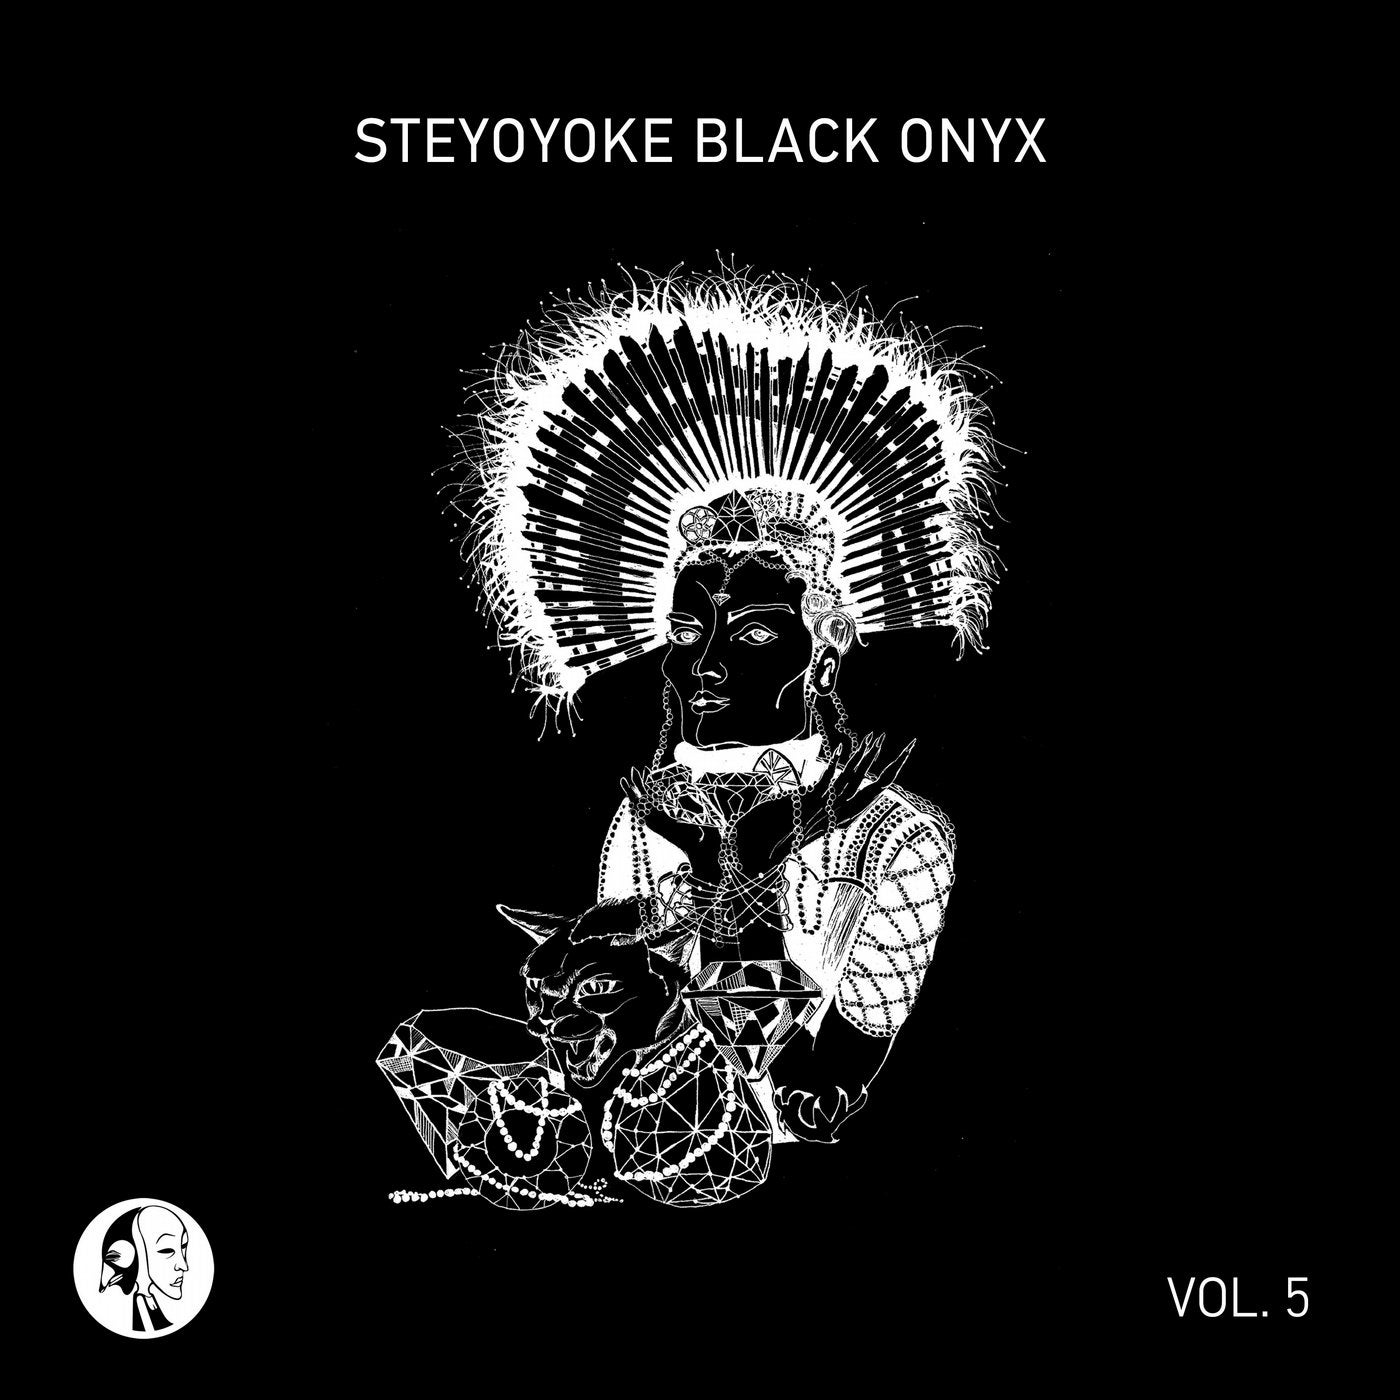 Steyoyoke Black Onyx, Vol. 5